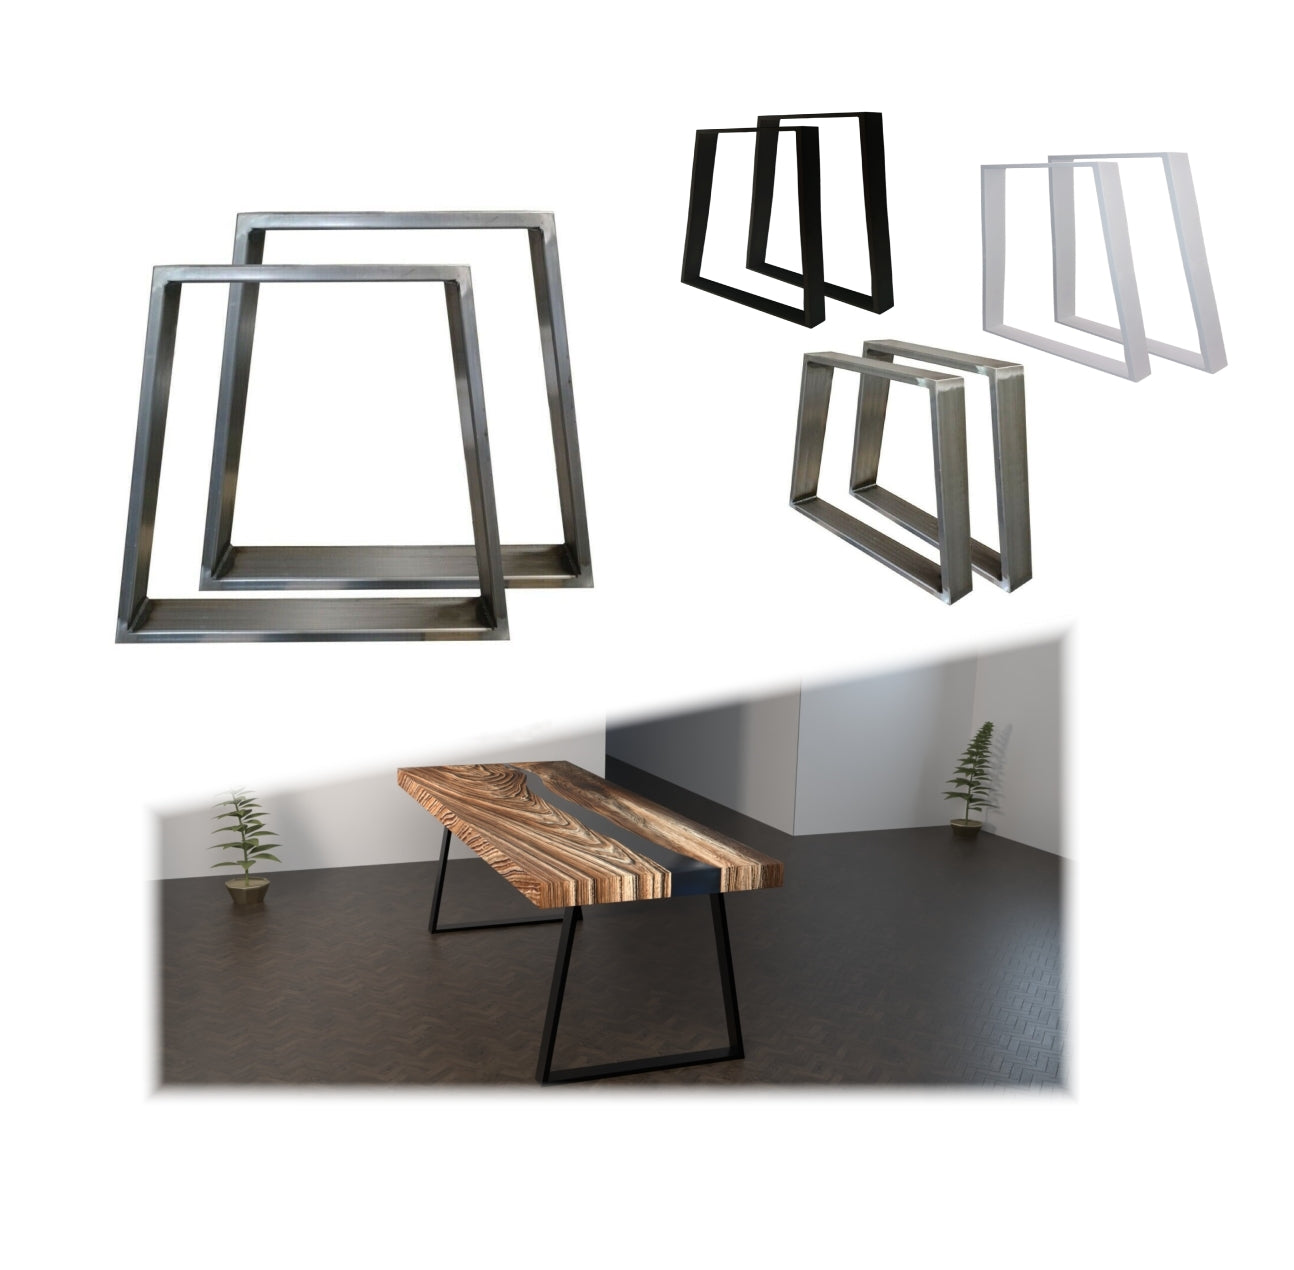 Stabile Tischgestelle TR3 in Trapez Form, schräg, Stahlrahmen 80x20 mm, Pulverbeschichtung nach Wunsch oder im Industriedesign, anpassbare Größen